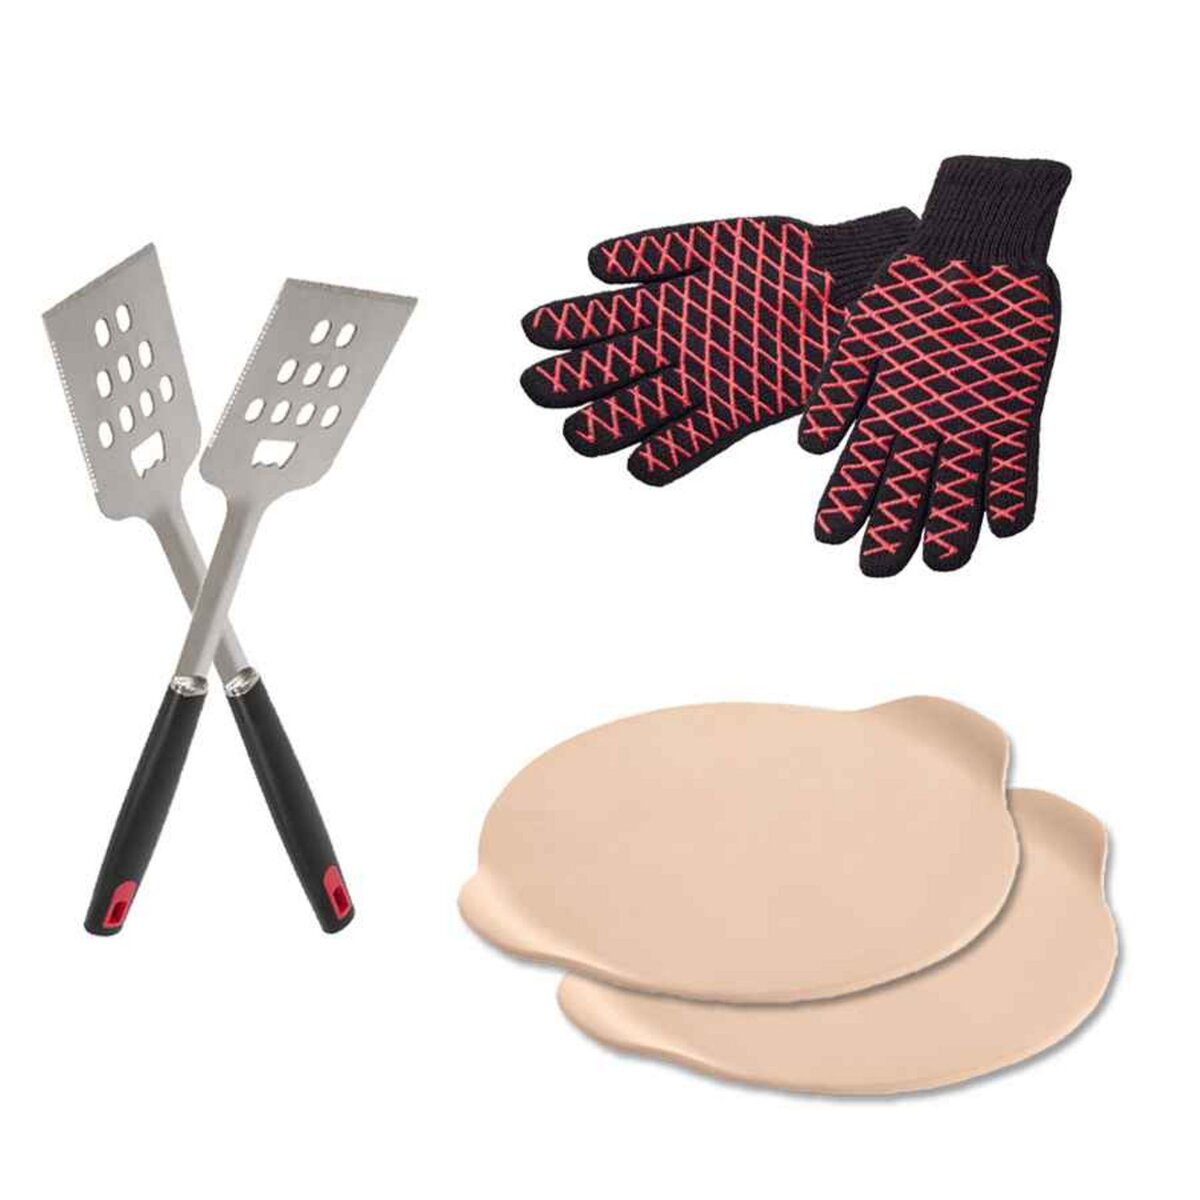 CENTRALE BRICO Kit 6 accessoires pour barbecue - Spatules - Gants - Pierres à pizza